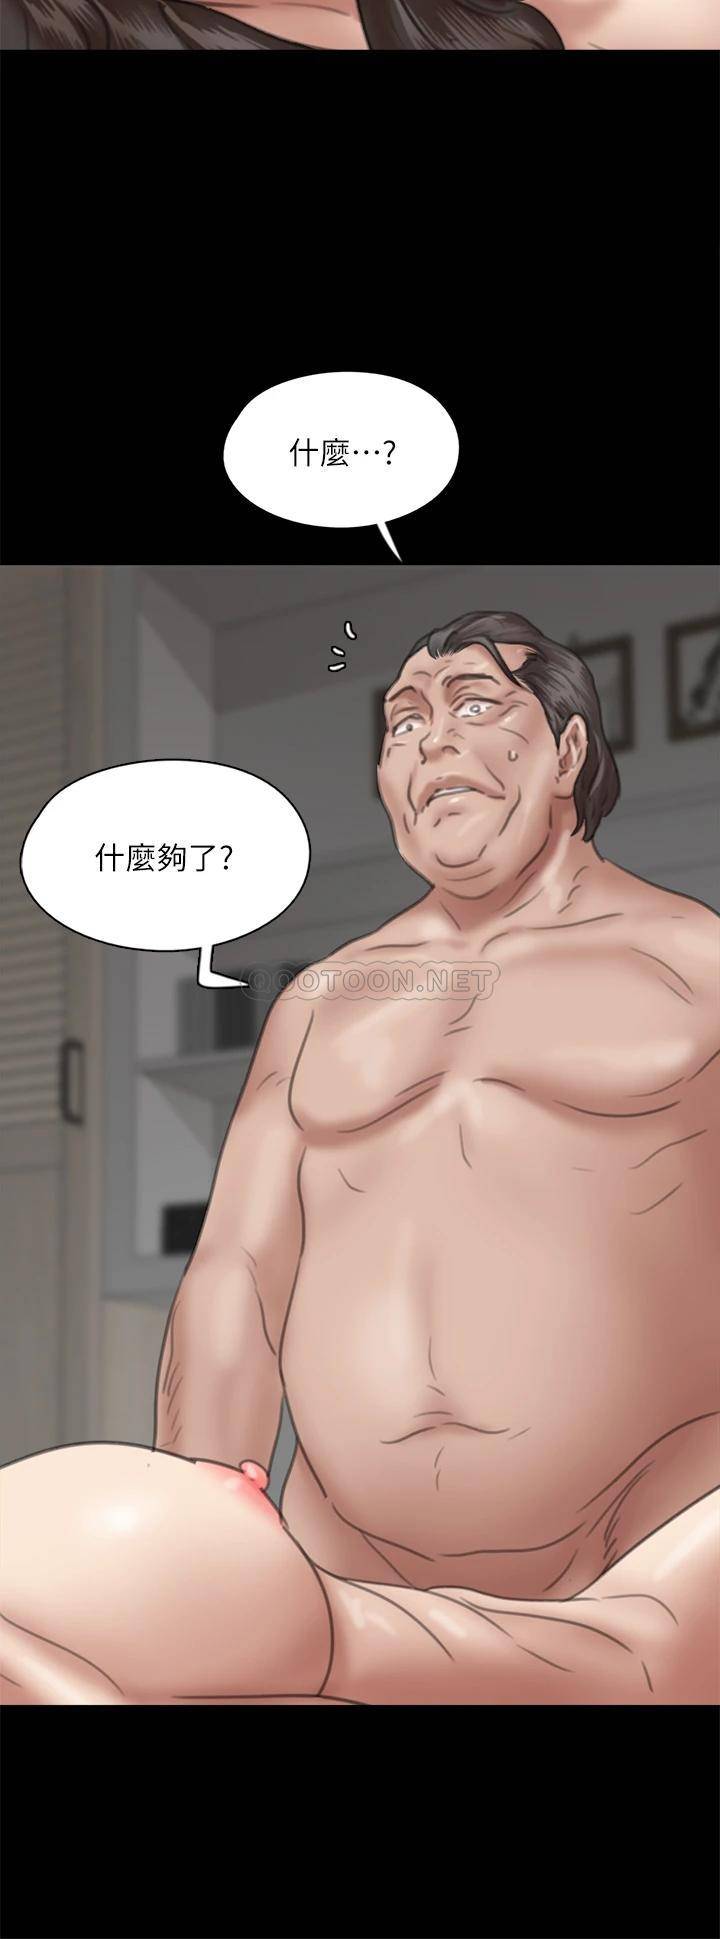 韩国污漫画 偶像女優 第52话配合会长的重口味 30